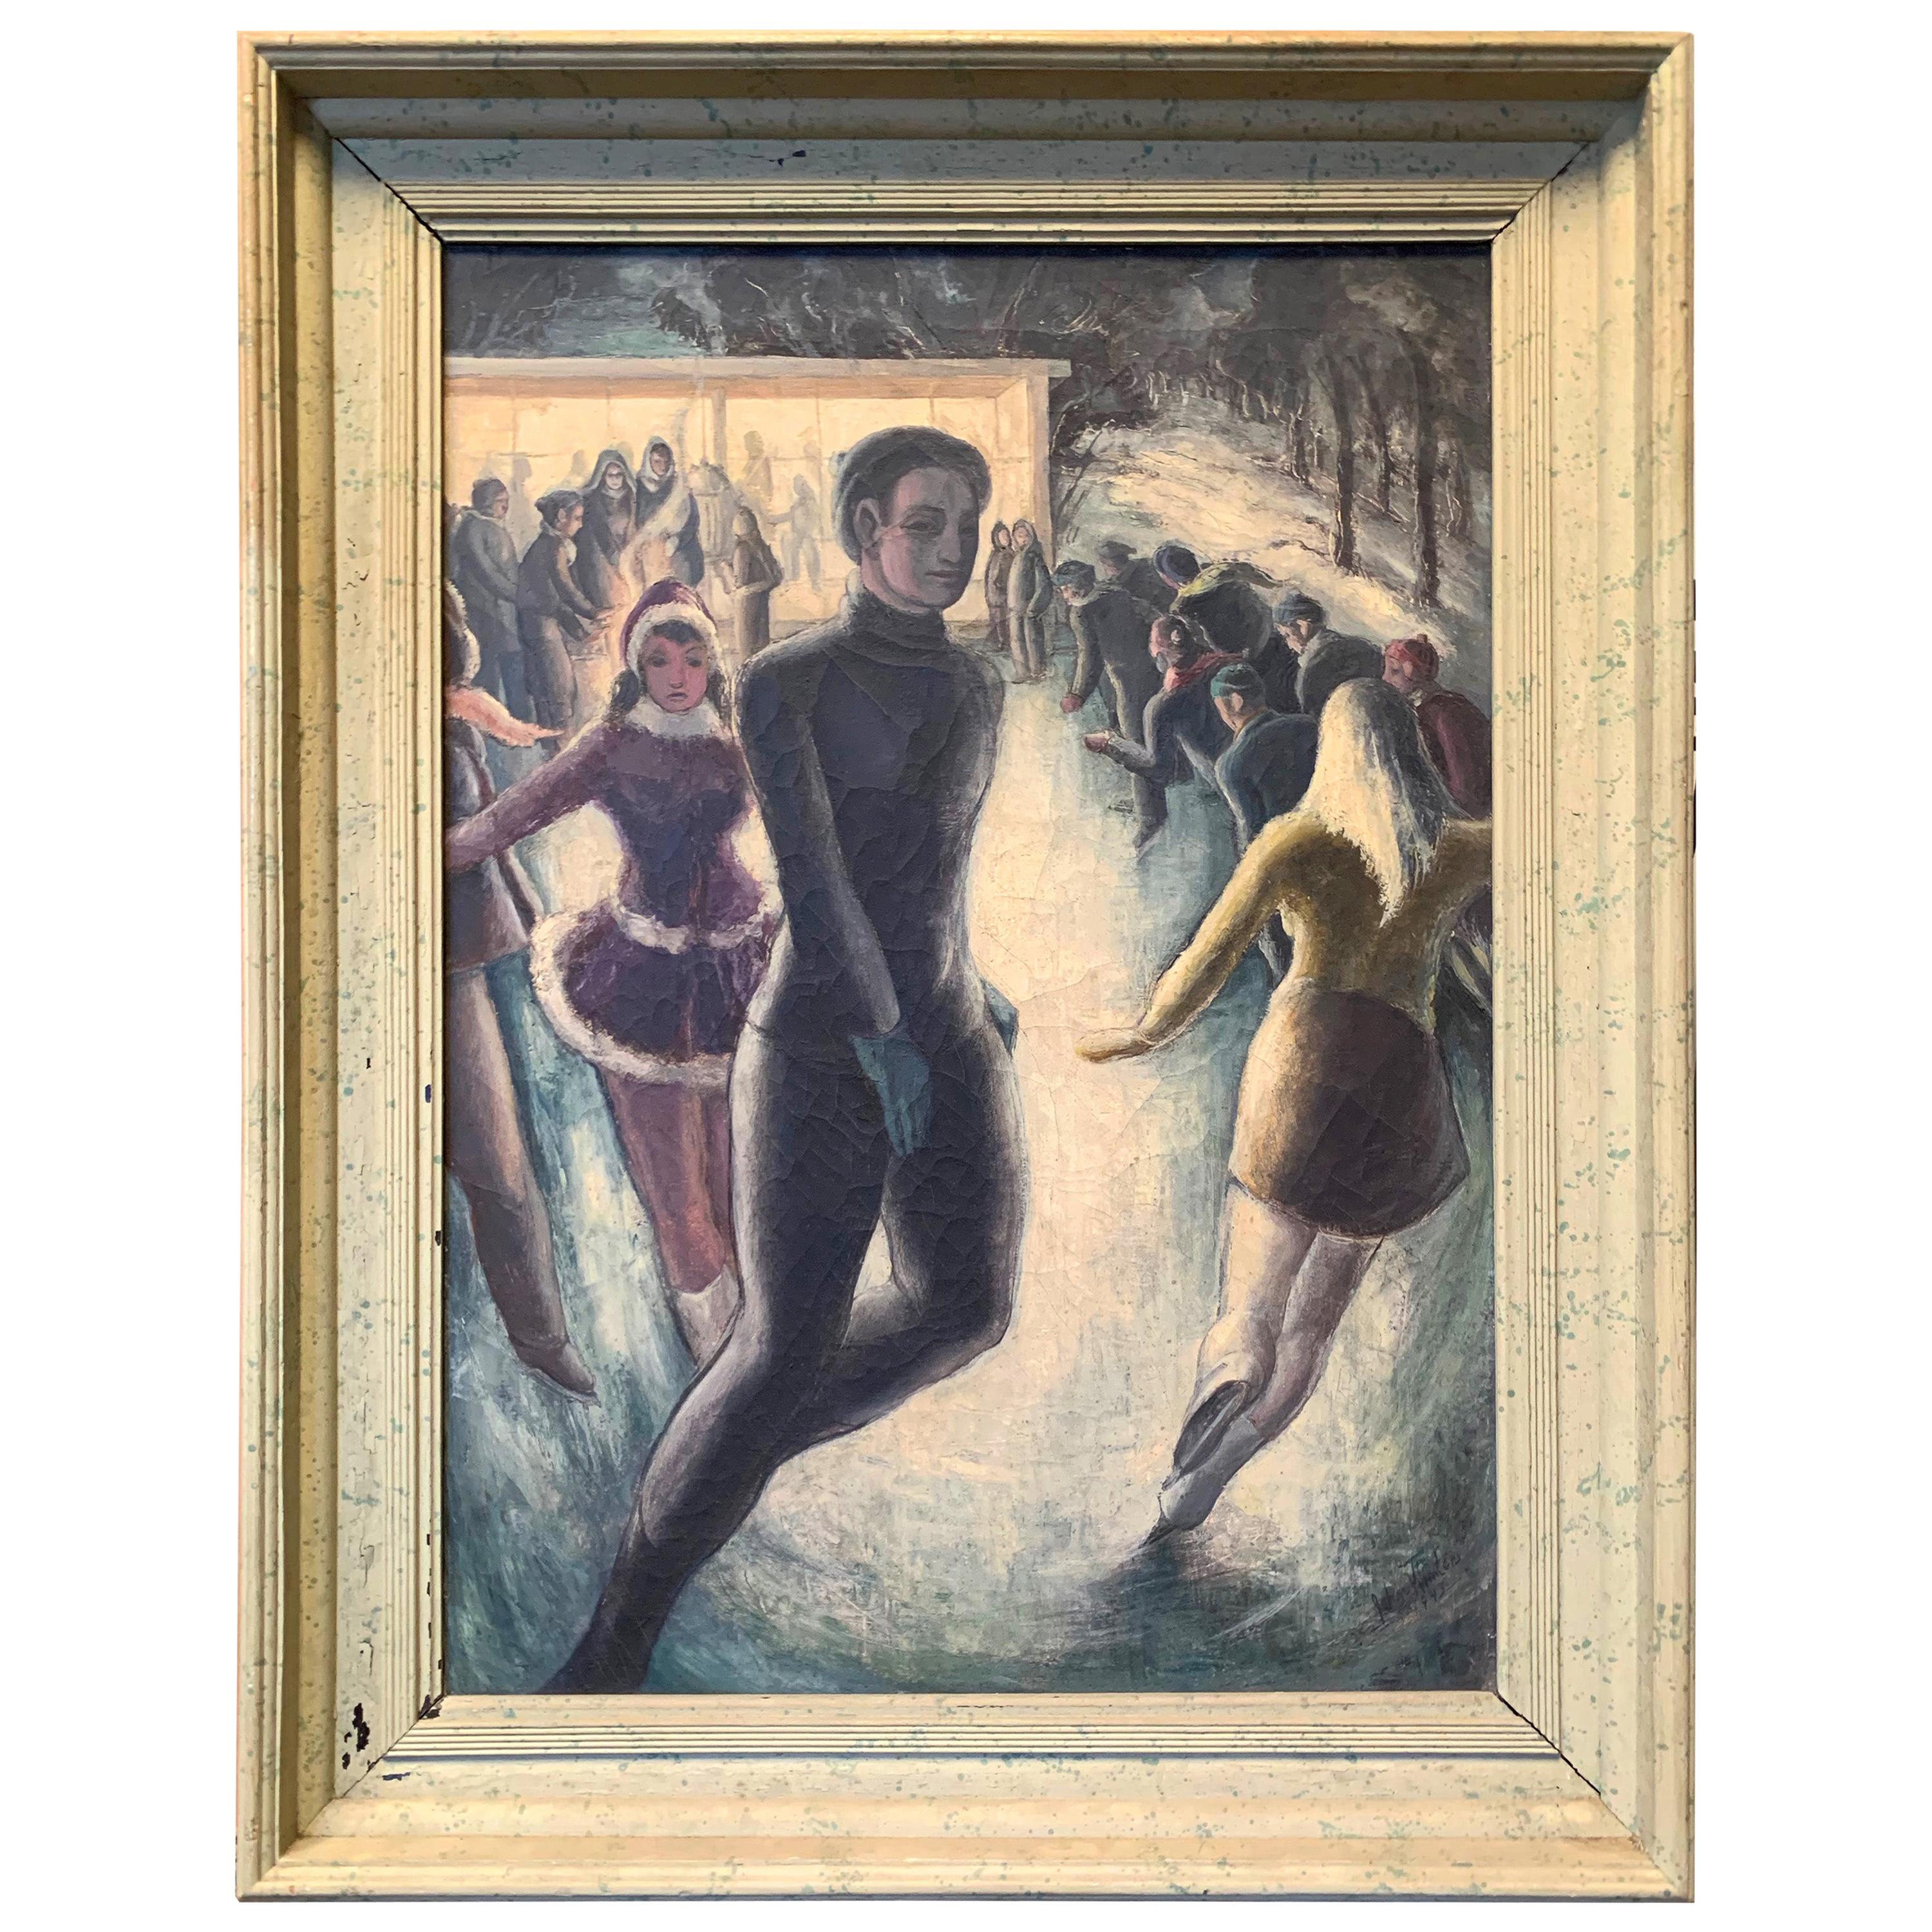 "Nachtschlittschuhläufer", Vivid Genremalerei des Schlittschuhlaufens im Chicago der 1940er Jahre